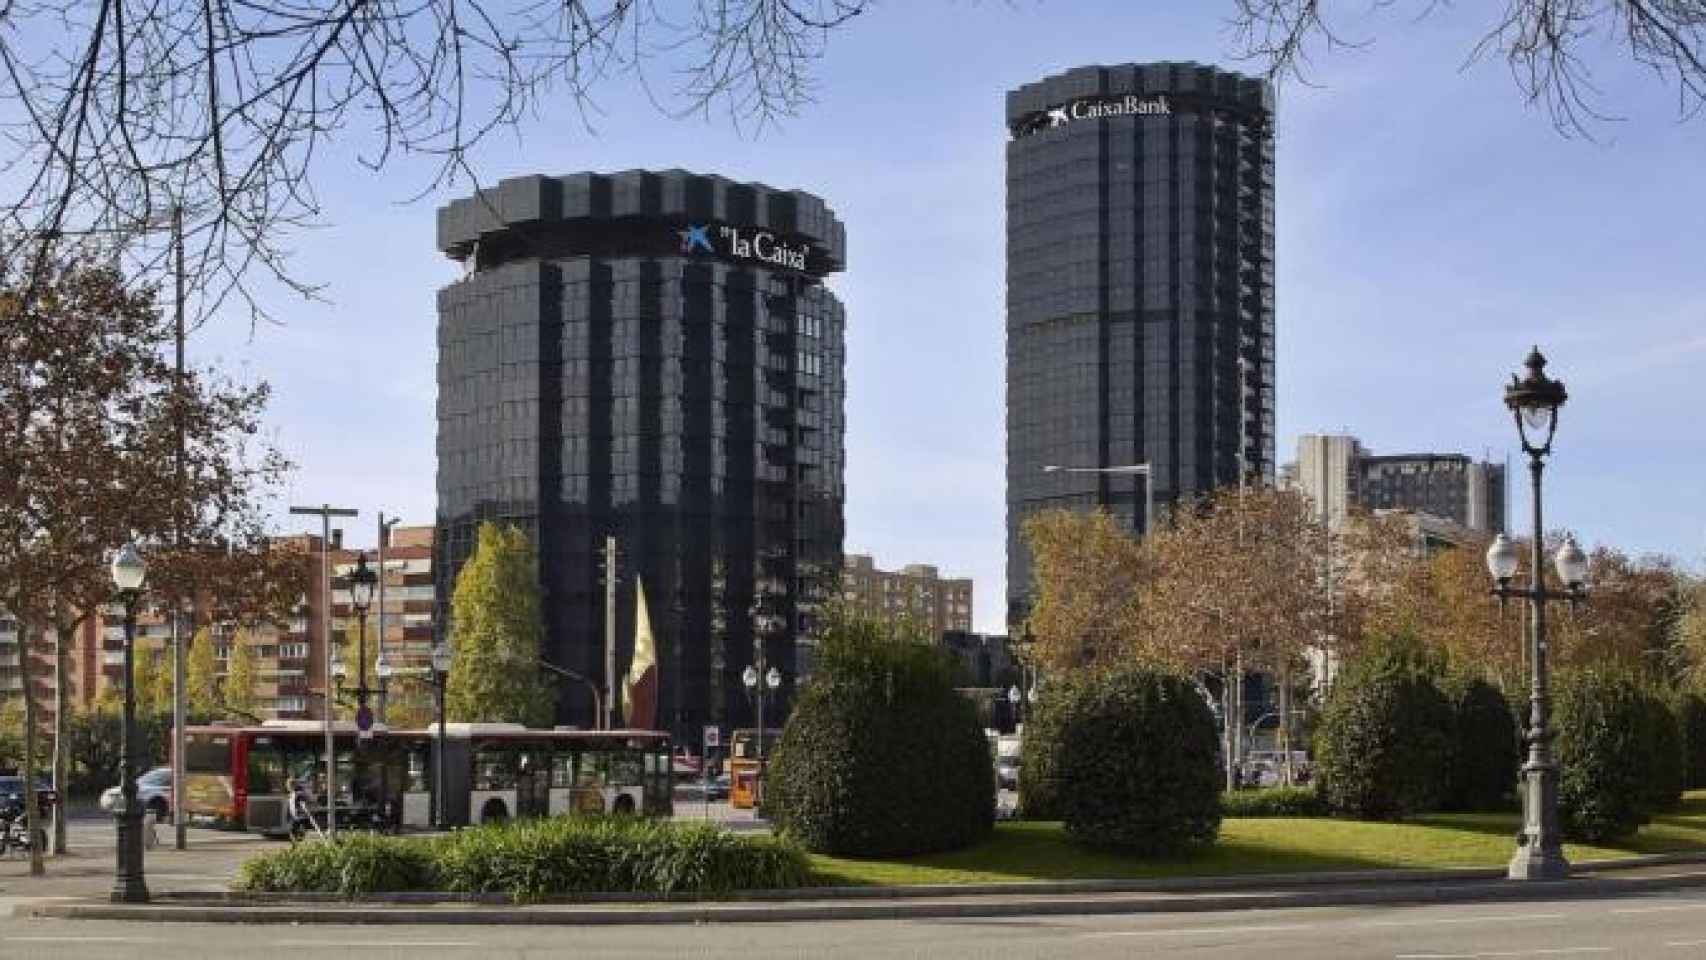 Imagen de la sede de Caixabank en Barcelona, la entidad que ha anunciado que aplicará un ERE a 2.157 trabajadores / CG